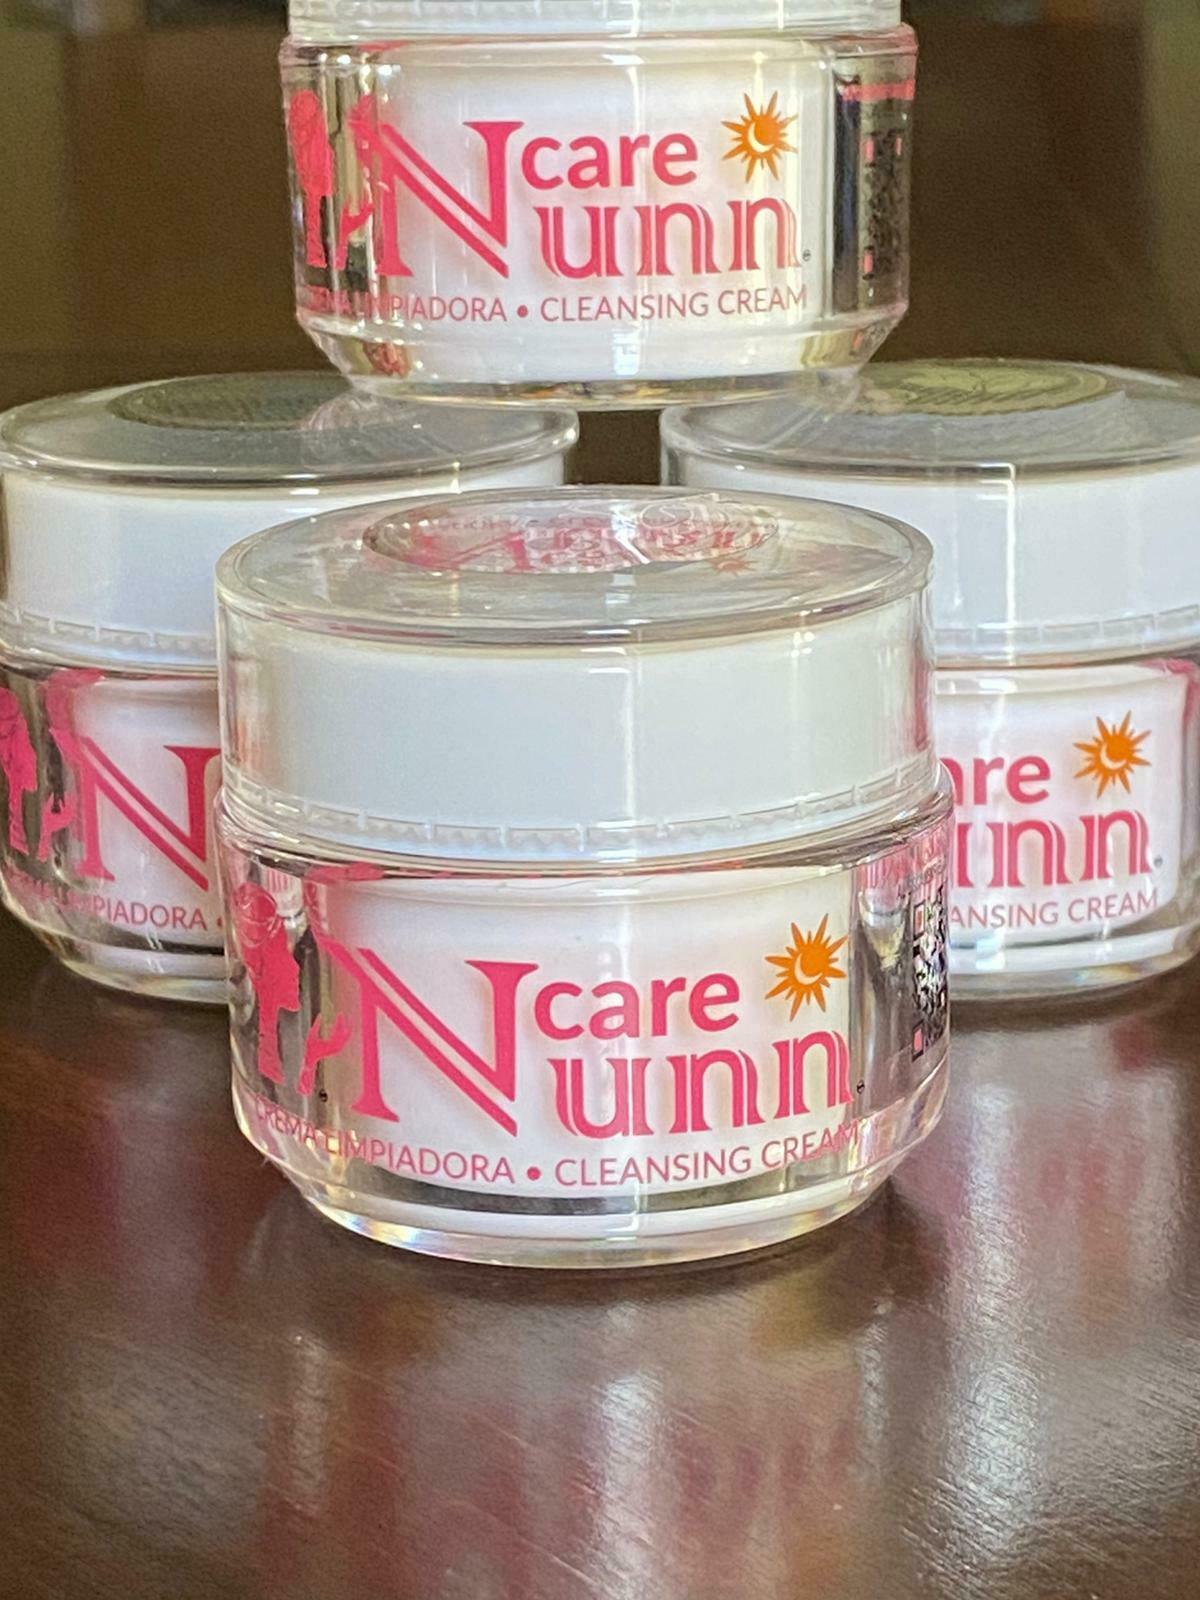 Nunn Care Crema Limpiadora 100% Original Elimina Acne,manchas,paÑo!